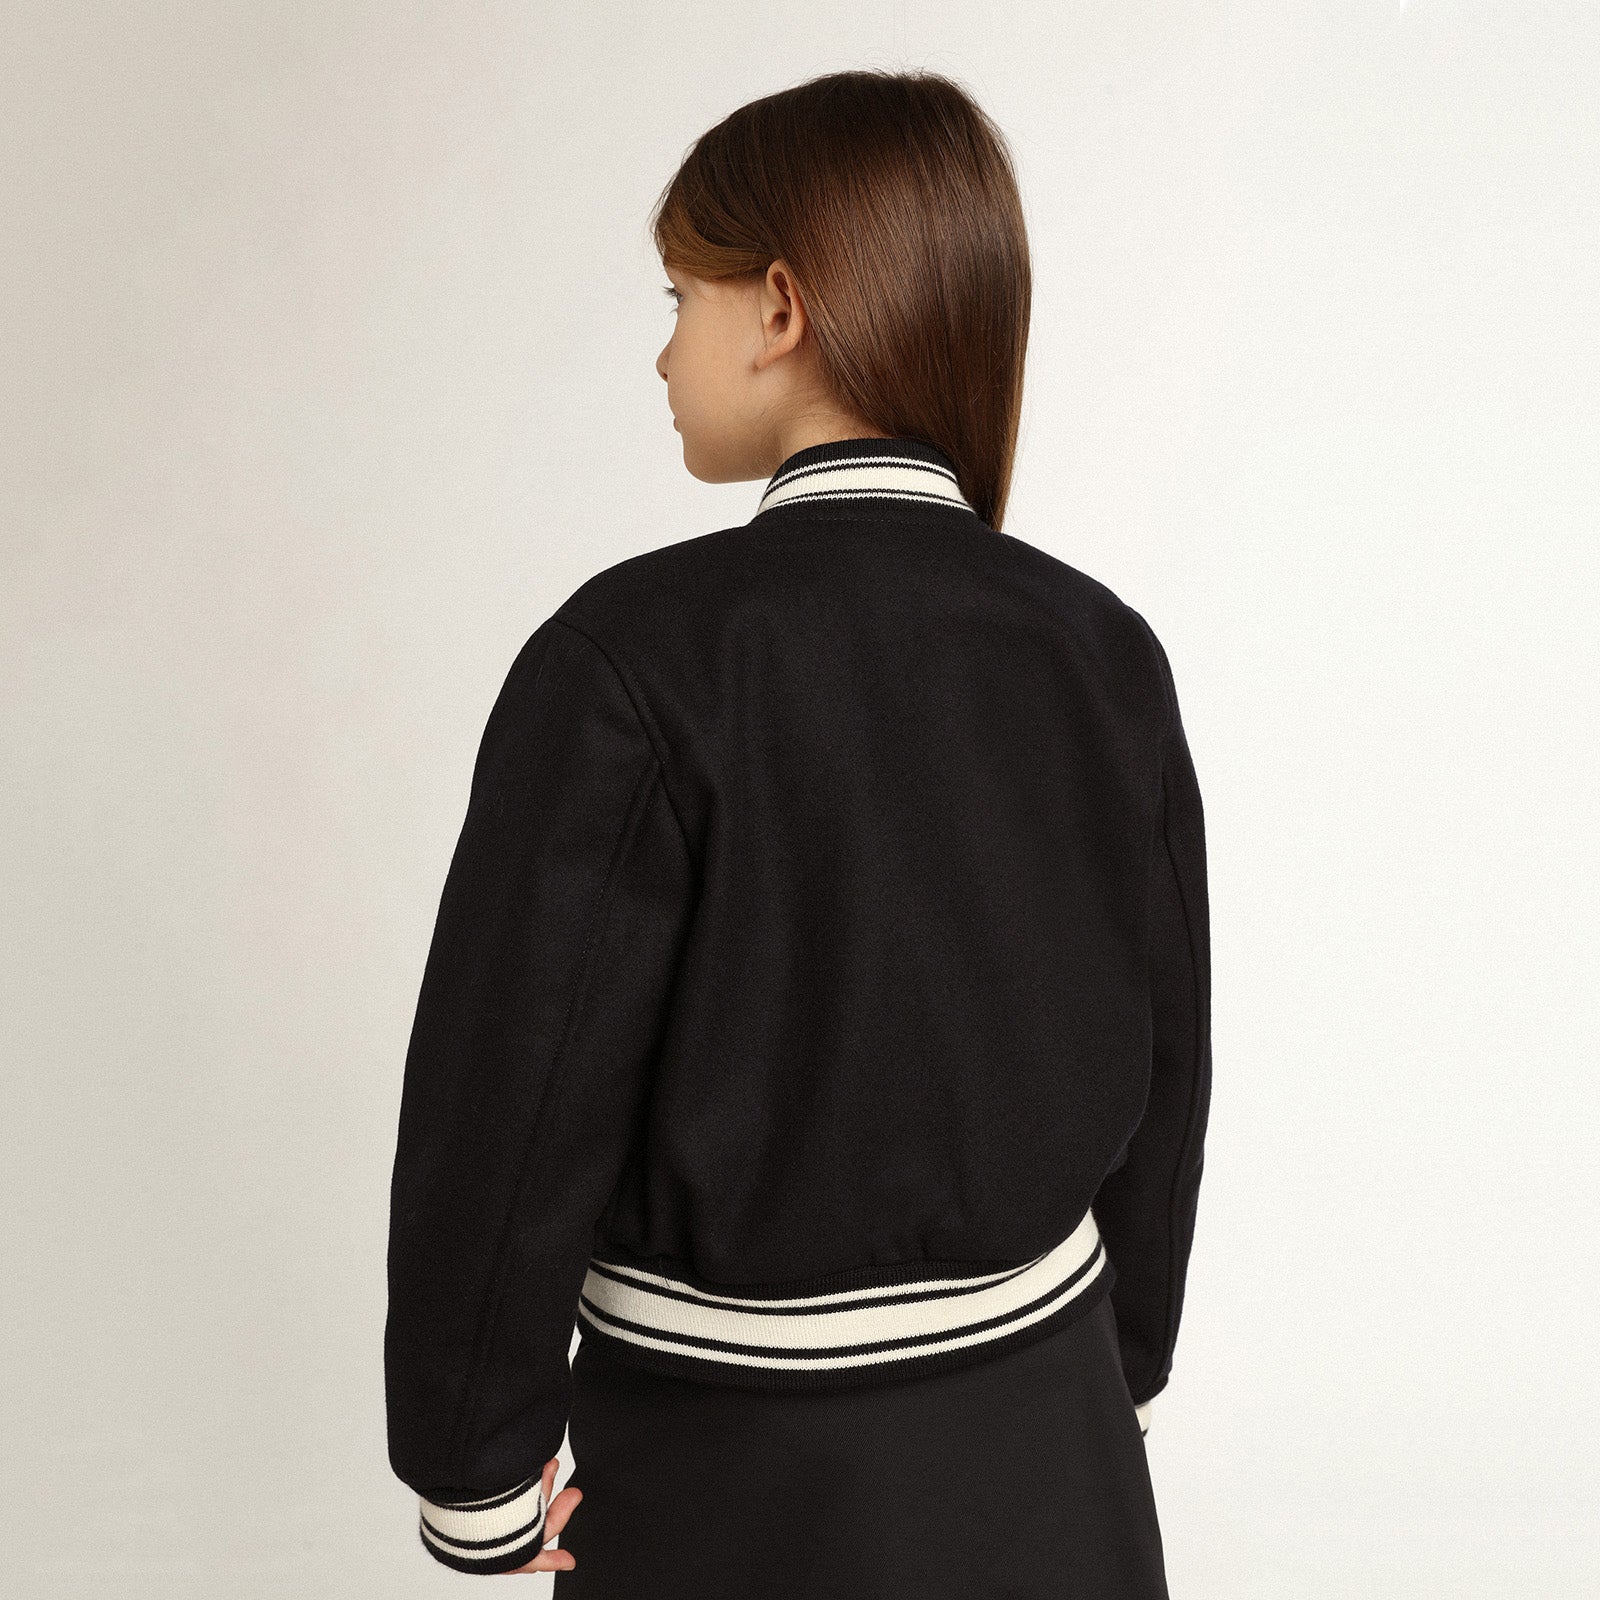 Girls Navy Wool Jacket